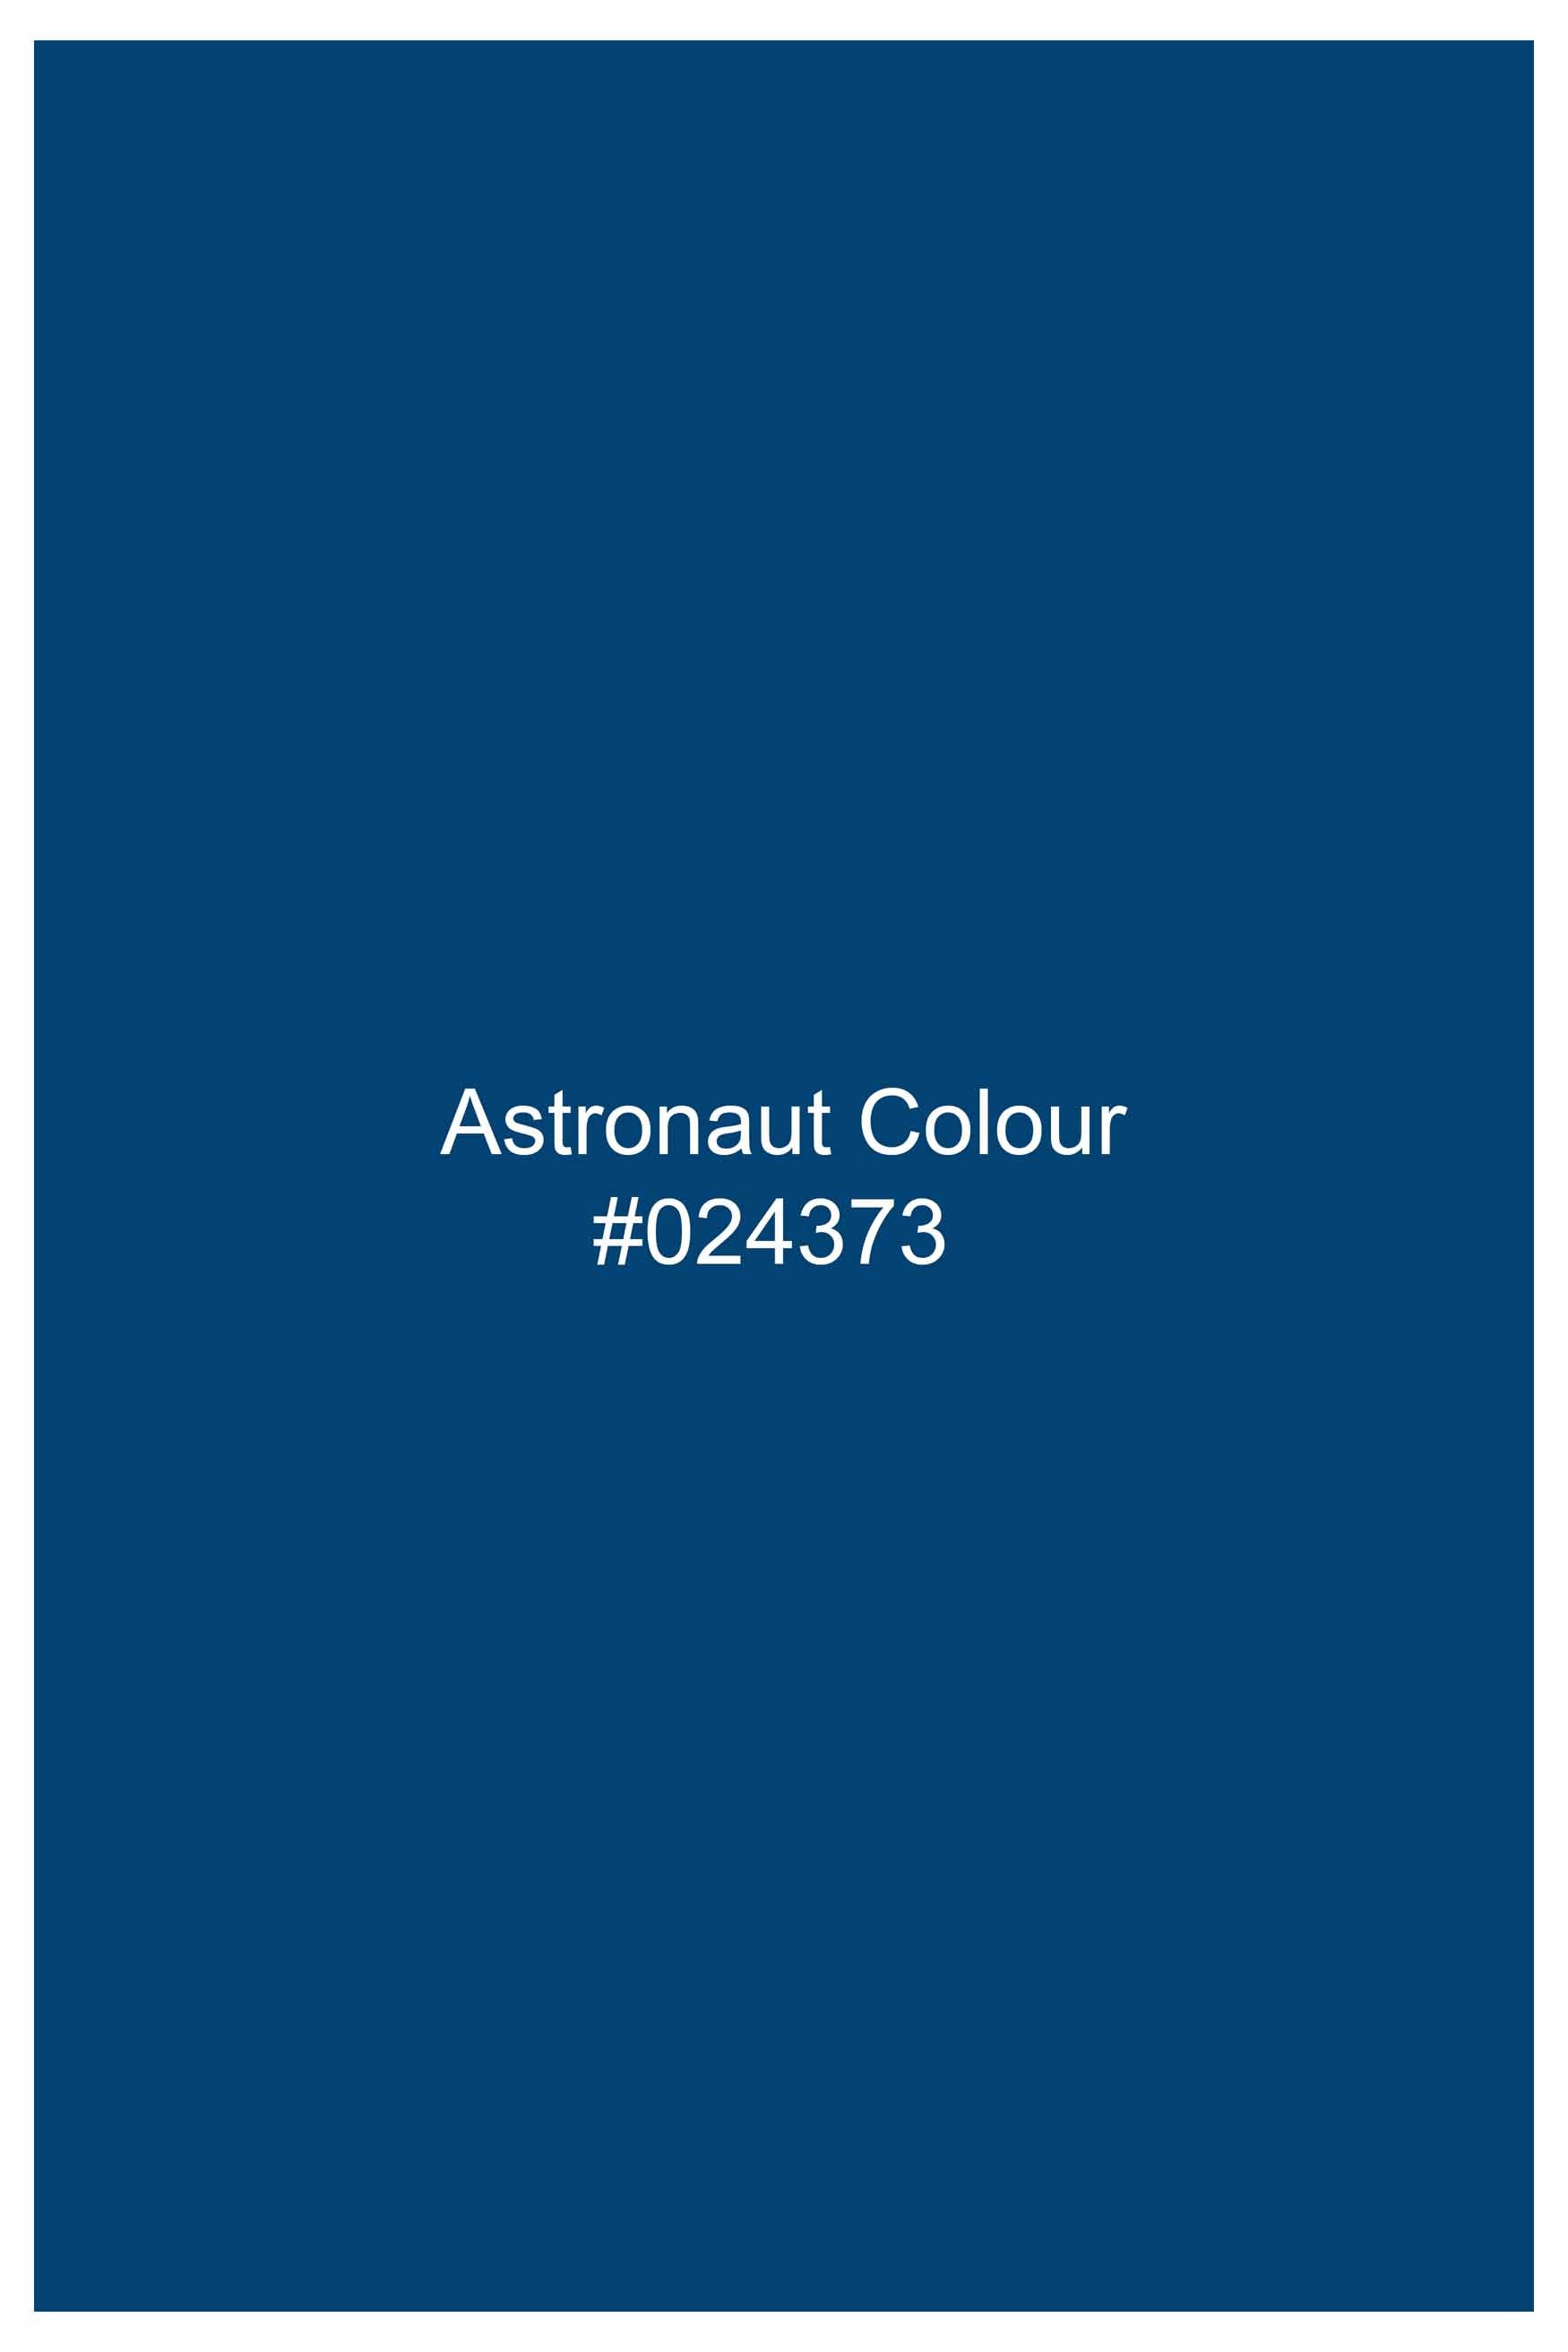 Astronaut Blue Subtle Sheen Super Soft Premium Cotton Shirt 10986-BLK-38, 10986-BLK-H-38, 10986-BLK-39, 10986-BLK-H-39, 10986-BLK-40, 10986-BLK-H-40, 10986-BLK-42, 10986-BLK-H-42, 10986-BLK-44, 10986-BLK-H-44, 10986-BLK-46, 10986-BLK-H-46, 10986-BLK-48, 10986-BLK-H-48, 10986-BLK-50, 10986-BLK-H-50, 10986-BLK-52, 10986-BLK-H-52